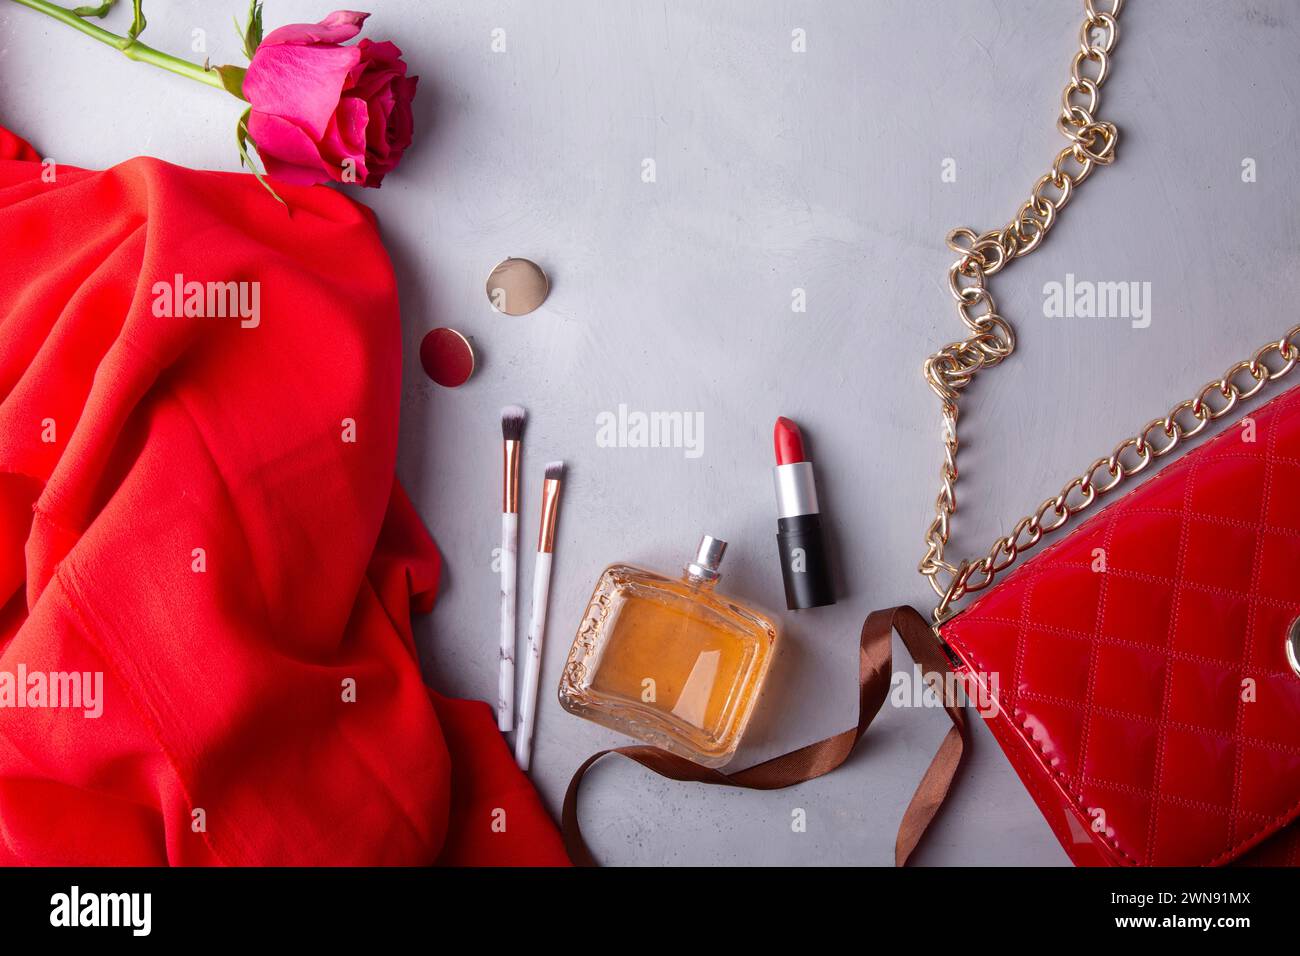 Feminine essentials perfume, lipstick, make up brushes and fresh flowers. Stock Photo